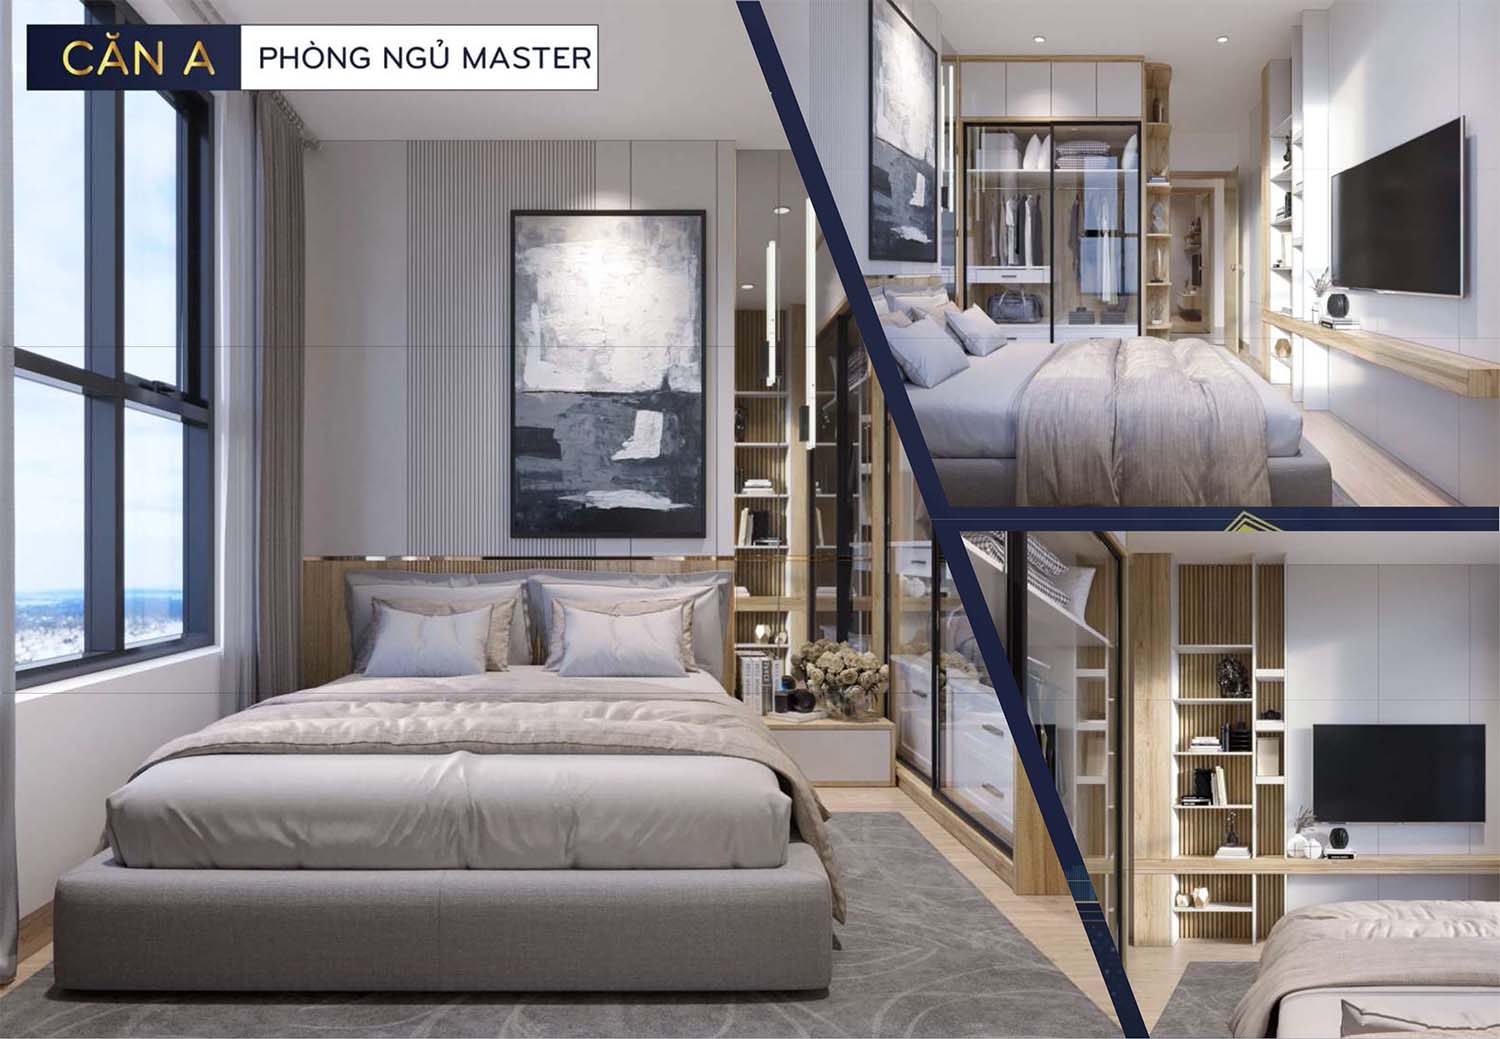 Hình ảnh thiết kế nhà mẫu Bcons Polaris căn A phòng ngủ